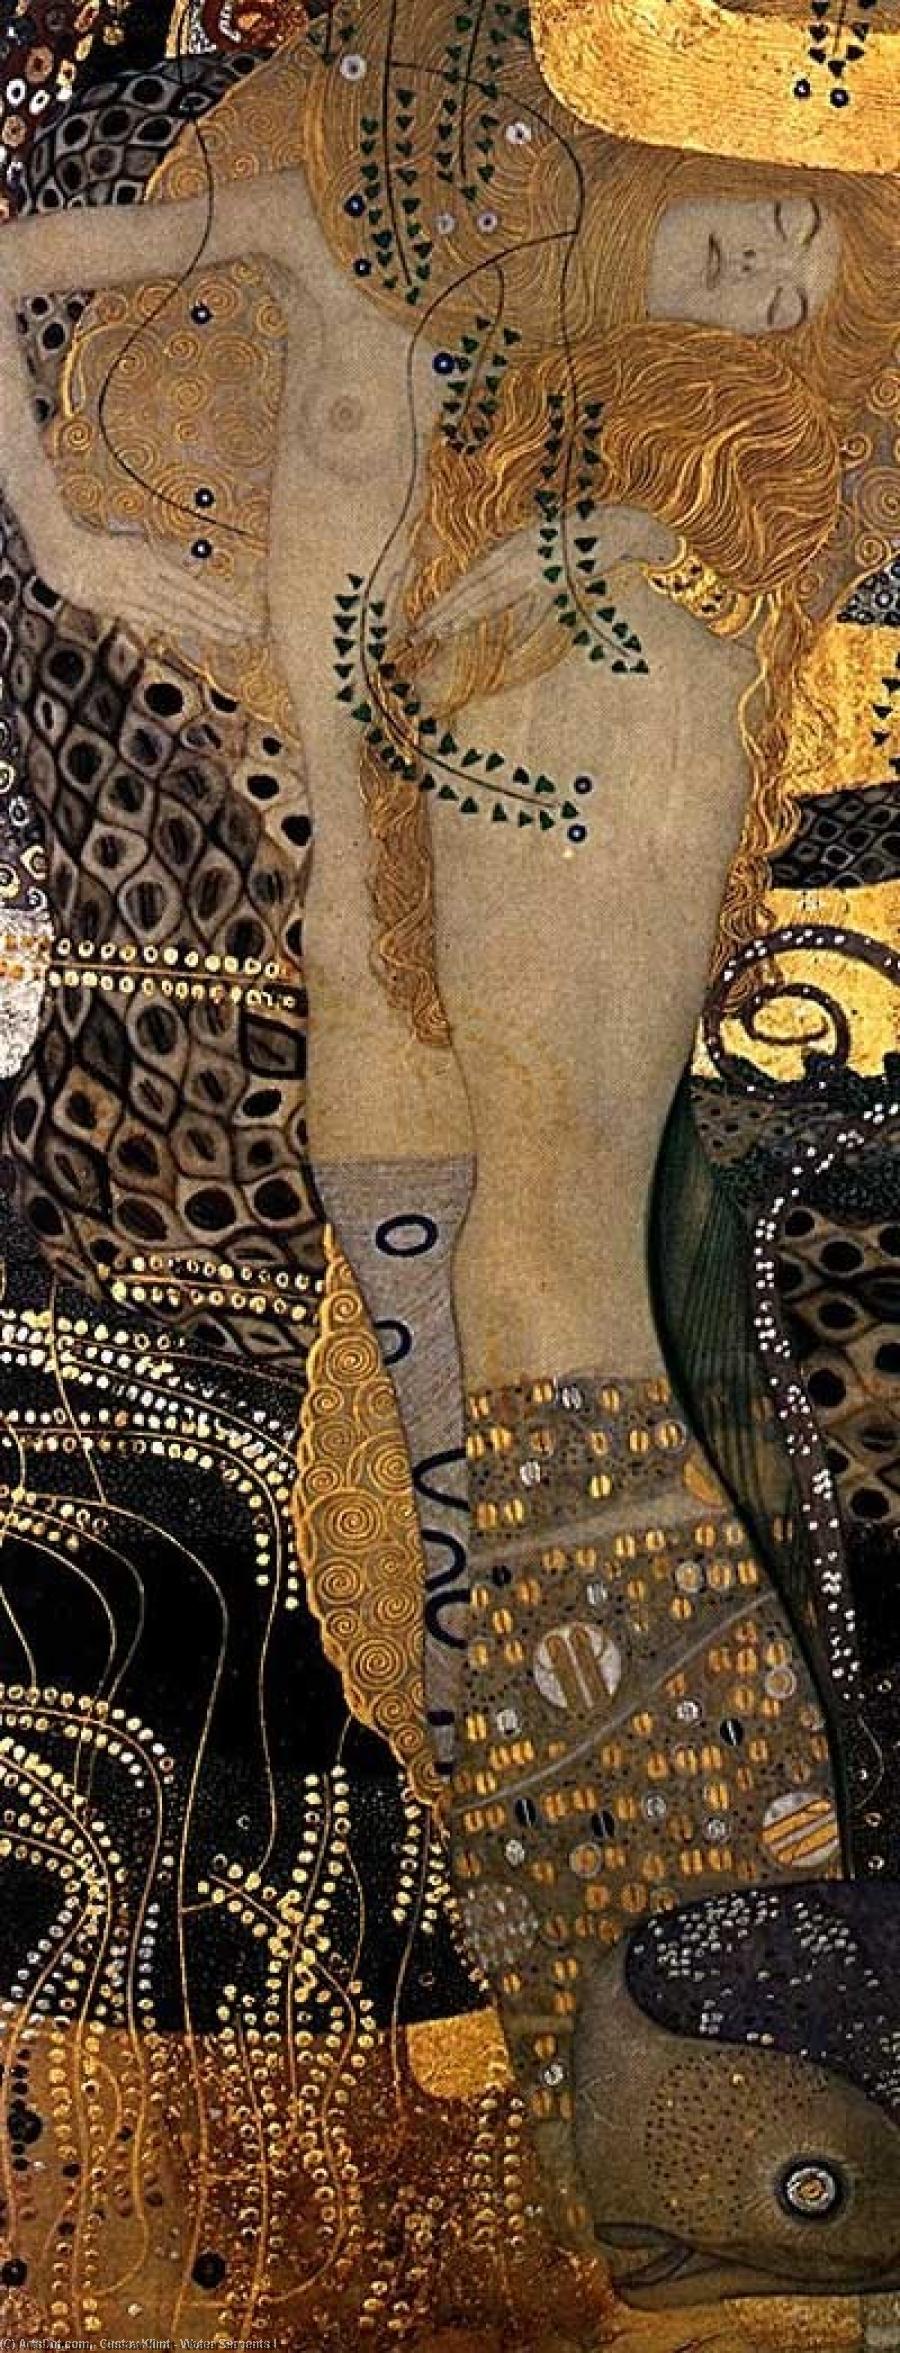 Wikoo.org - موسوعة الفنون الجميلة - اللوحة، العمل الفني Gustav Klimt - Water Serpents I